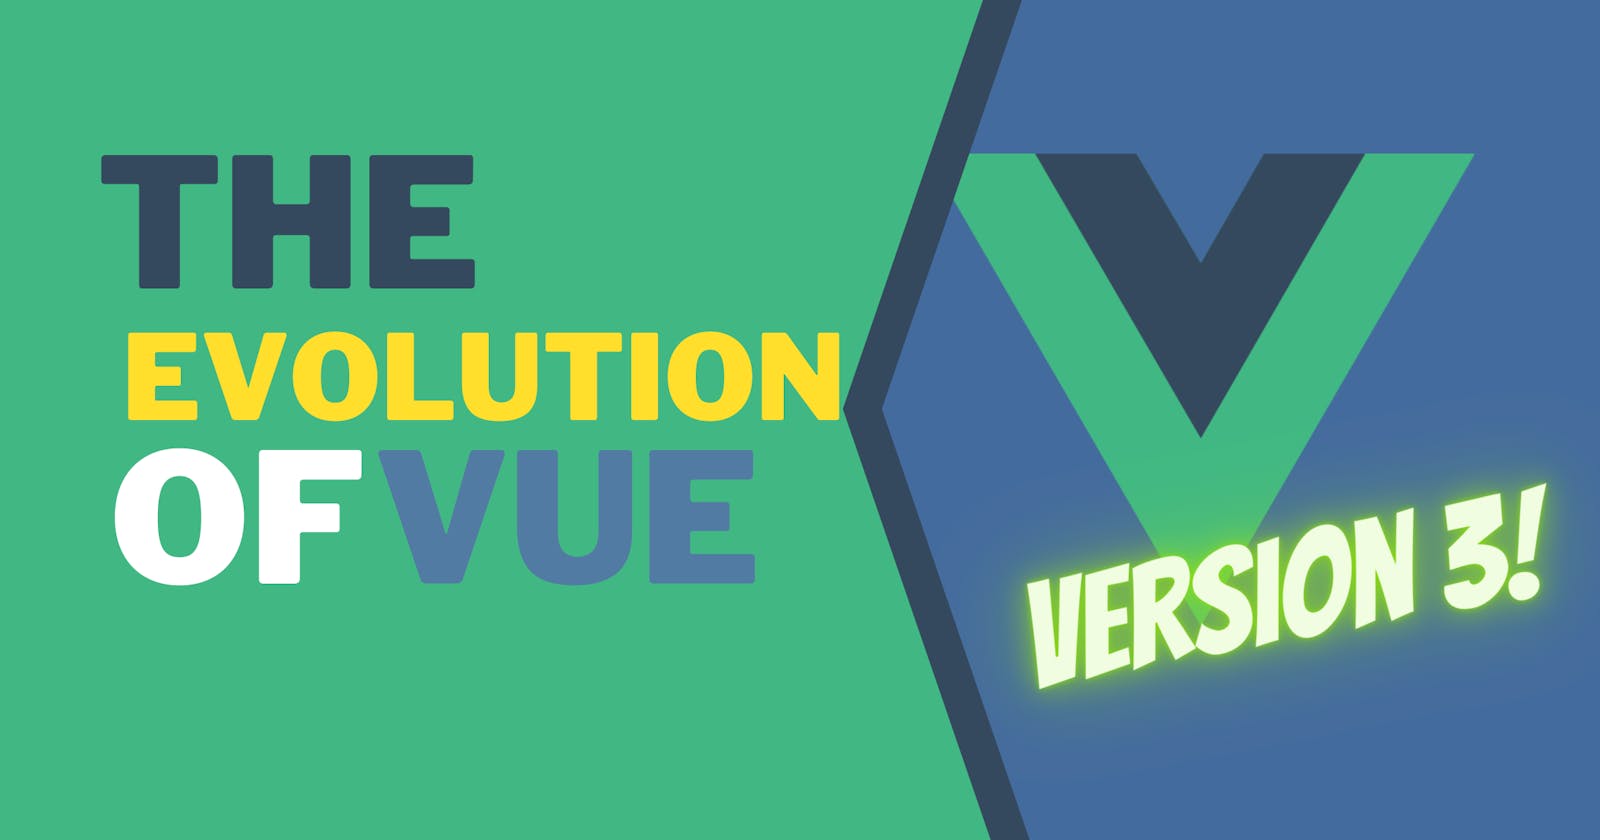 Vue 3 - the Evolution of Vue